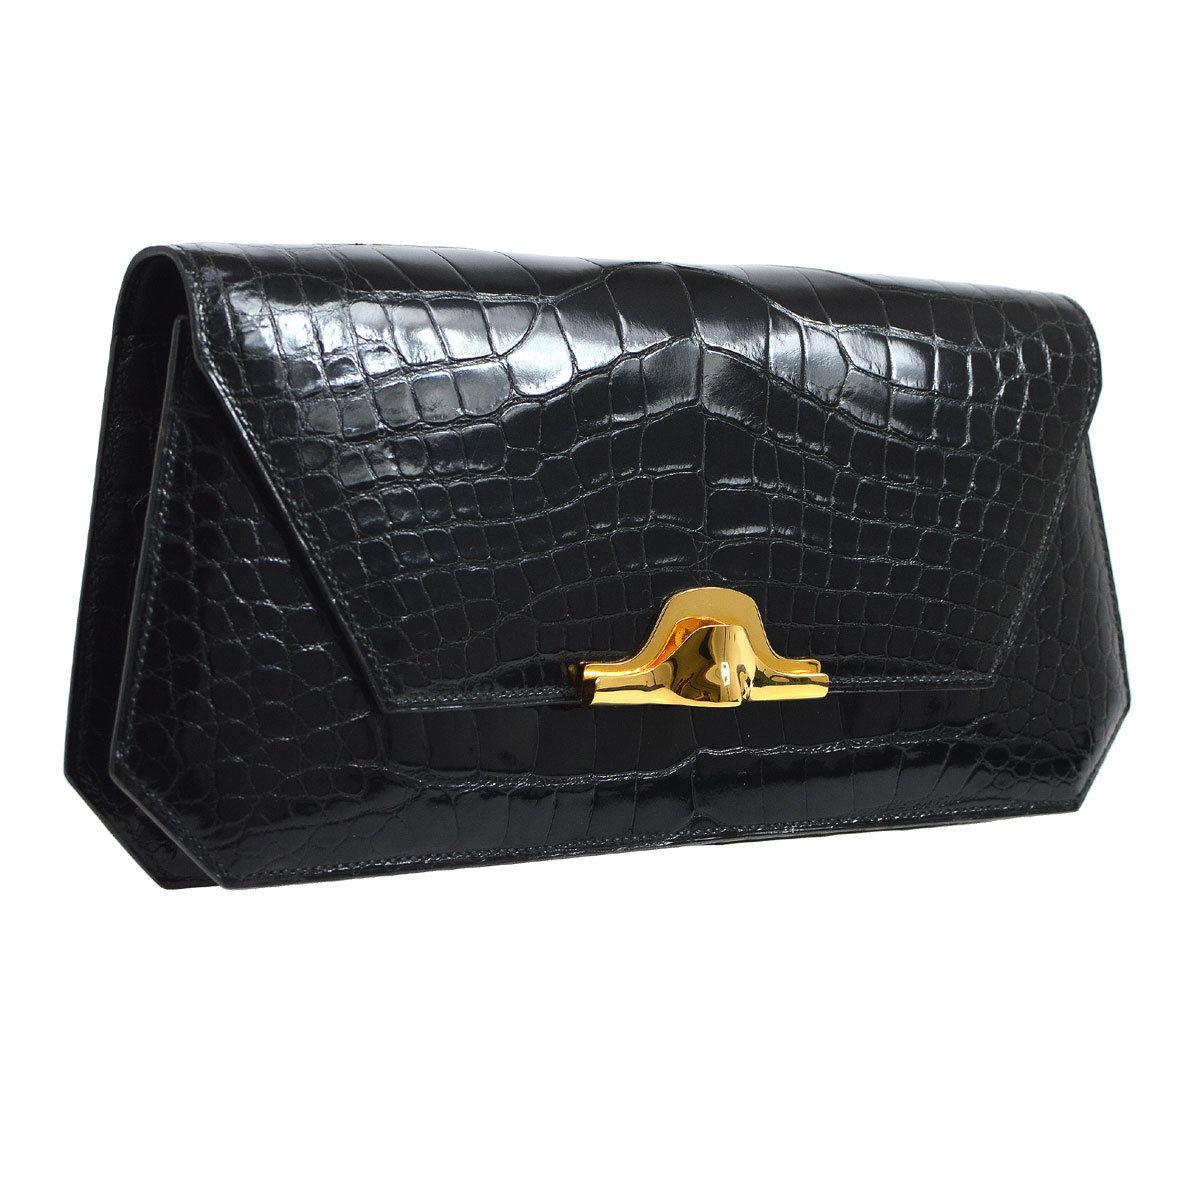 Hermes Black Alligator Leather Gold Tone Emblem Evening Clutch Flap Bag